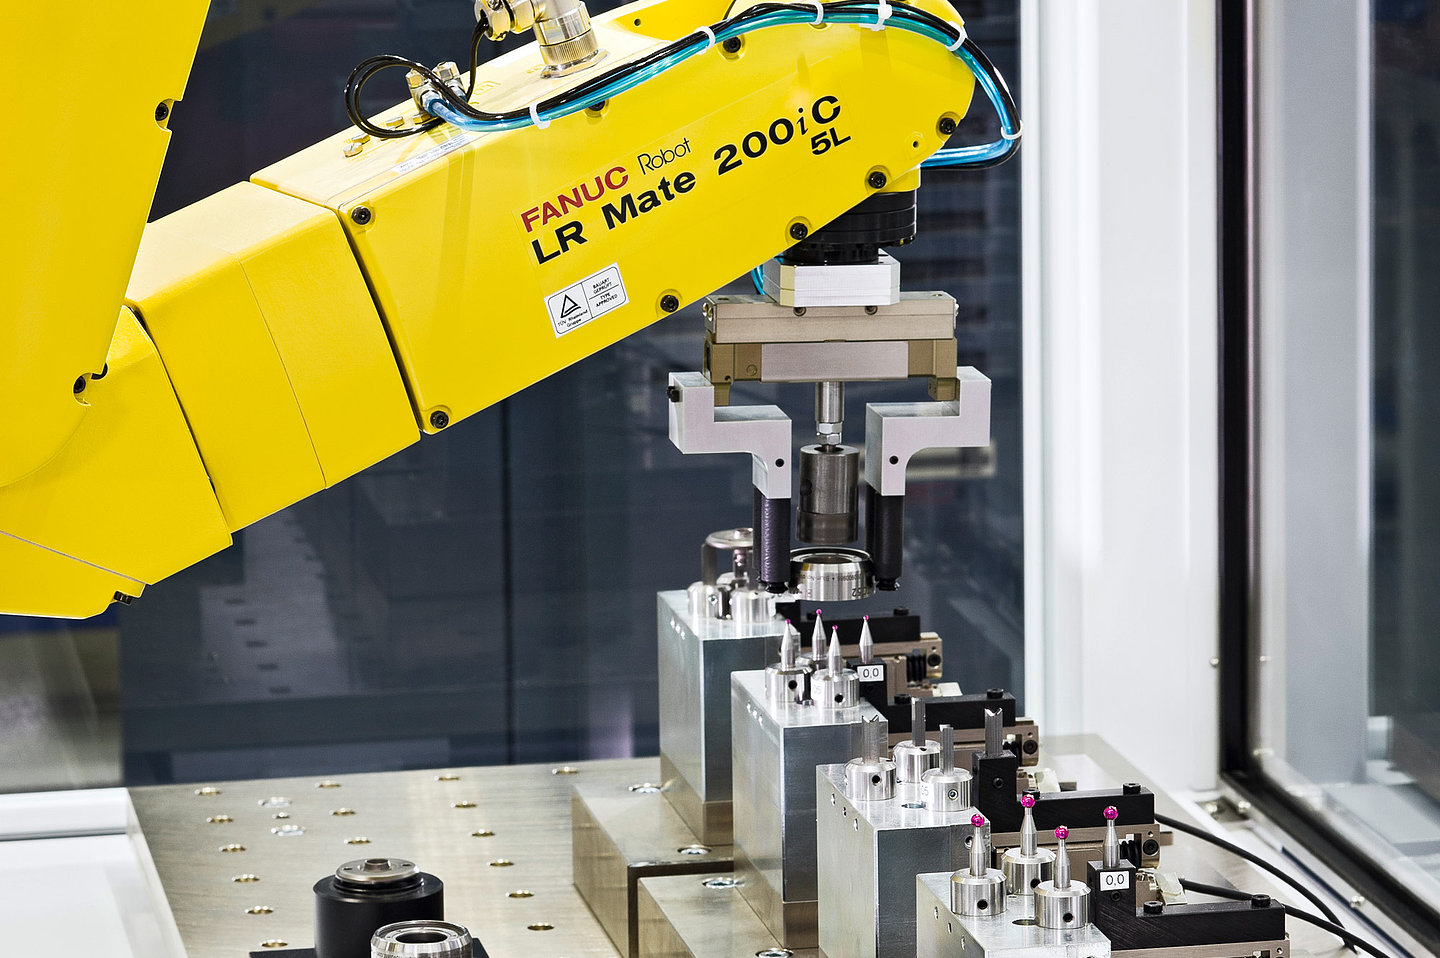 Blum-Novotest Flexibles Mess- und Automatisierungskonzept BMK5 - Teilehandling mit 6-Achs-Roboter